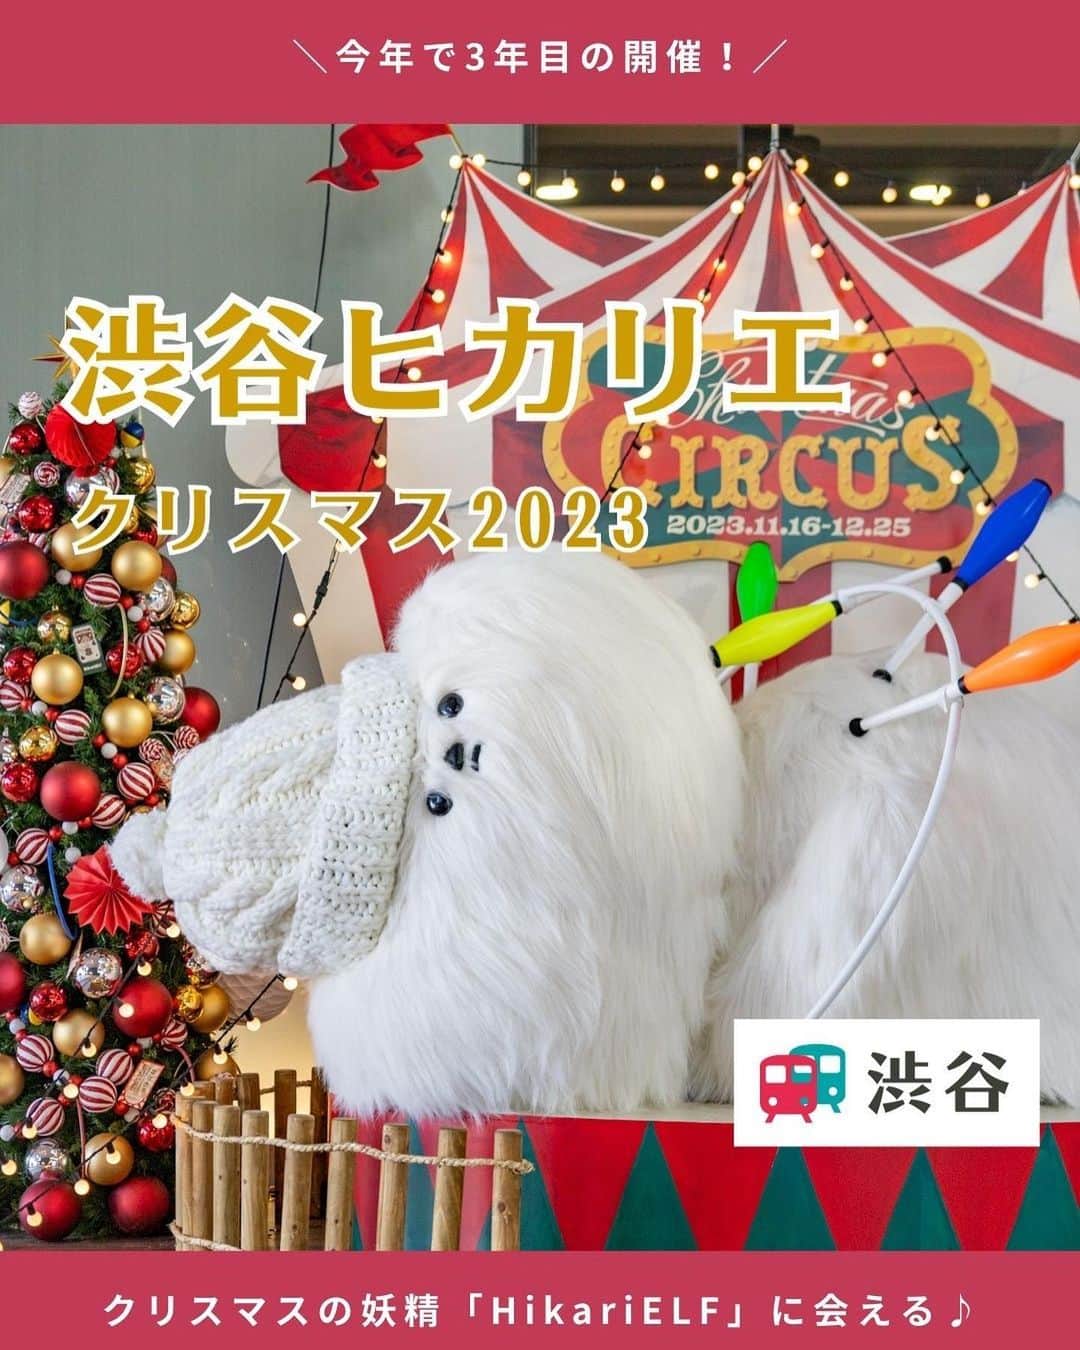 東急電鉄のインスタグラム：「. わくわくするクリスマスシーズンがやってきました🎄 のるるんと一緒に「渋谷ヒカリエ」のクリスマスを楽しんできたので、その様子をご紹介します。  渋谷ヒカリエでは12月25日(月)まで、 クリスマスプロモーションを開催中！  モフモフとした5⼈の渋谷ヒカリエ クリスマスの妖精「HikariELF（ヒカリエルフ）」が館内各所に登場し サーカスのパフォーマンスを披露しています🎪 みんなを驚かせたい、喜ばせたい♪ ……と磨いた技に注目してください。  渋谷駅B5出口から早速出発〜！ 「HikariELF」の垂れ幕がお出迎え✨ 横にはのるるん時計もあるのでチェックを忘れずに。  3枚目） 地下1階「グルルのグルグル輪投げショー」 ムードメーカーのグルルが輪投げのパフォーマンス中♪  4枚目） 6階「統括部長のびっくり箱パフォーマンス」 箱に座って一緒に撮影もできます。  5枚目） 7階「バンド＆キーキーの玉乗りステージ」 レストランフロアなので、お食事前後にチェックしてみてください。  6枚目） 11階「BIGホッペの寝ながらジャグリングショー」 一際大きいもふもふに心癒されます。 　 「HikariELF」に会いに、渋谷ヒカリエを訪れてみてください✨ 　 【information】 渋谷ヒカリエ6～11Fのカフェ＆レストランでご飲食いただいた方を対象に、 HikariELFから「癒しのサプライズギフト」をプレゼントするキャンペーンを実施中です。 　 景品内容：休足時間 ※各店舗先着1日50名様に配布（一部店舗を除く） ※限定数達し次第終了 参加方法：6～11F カフェ＆レストラン（一部店舗を除く）のご利用 対象期間：2023年12月14日（木）～12月25日（月） 　 　 【Access】 渋谷ヒカリエ 🚃東横線・田園都市線「渋谷駅」 B5出口 直結 📍 東京都渋谷区渋谷2-21-1 ⏰11:00～23:00 ※店舗により異なる 　 　 #渋谷ヒカリエ #ヒカリエ #ヒカリエルフ #hikarie #hikarielf #クリスマスイルミネーション #お出かけスポット#のるるん #東急電鉄」